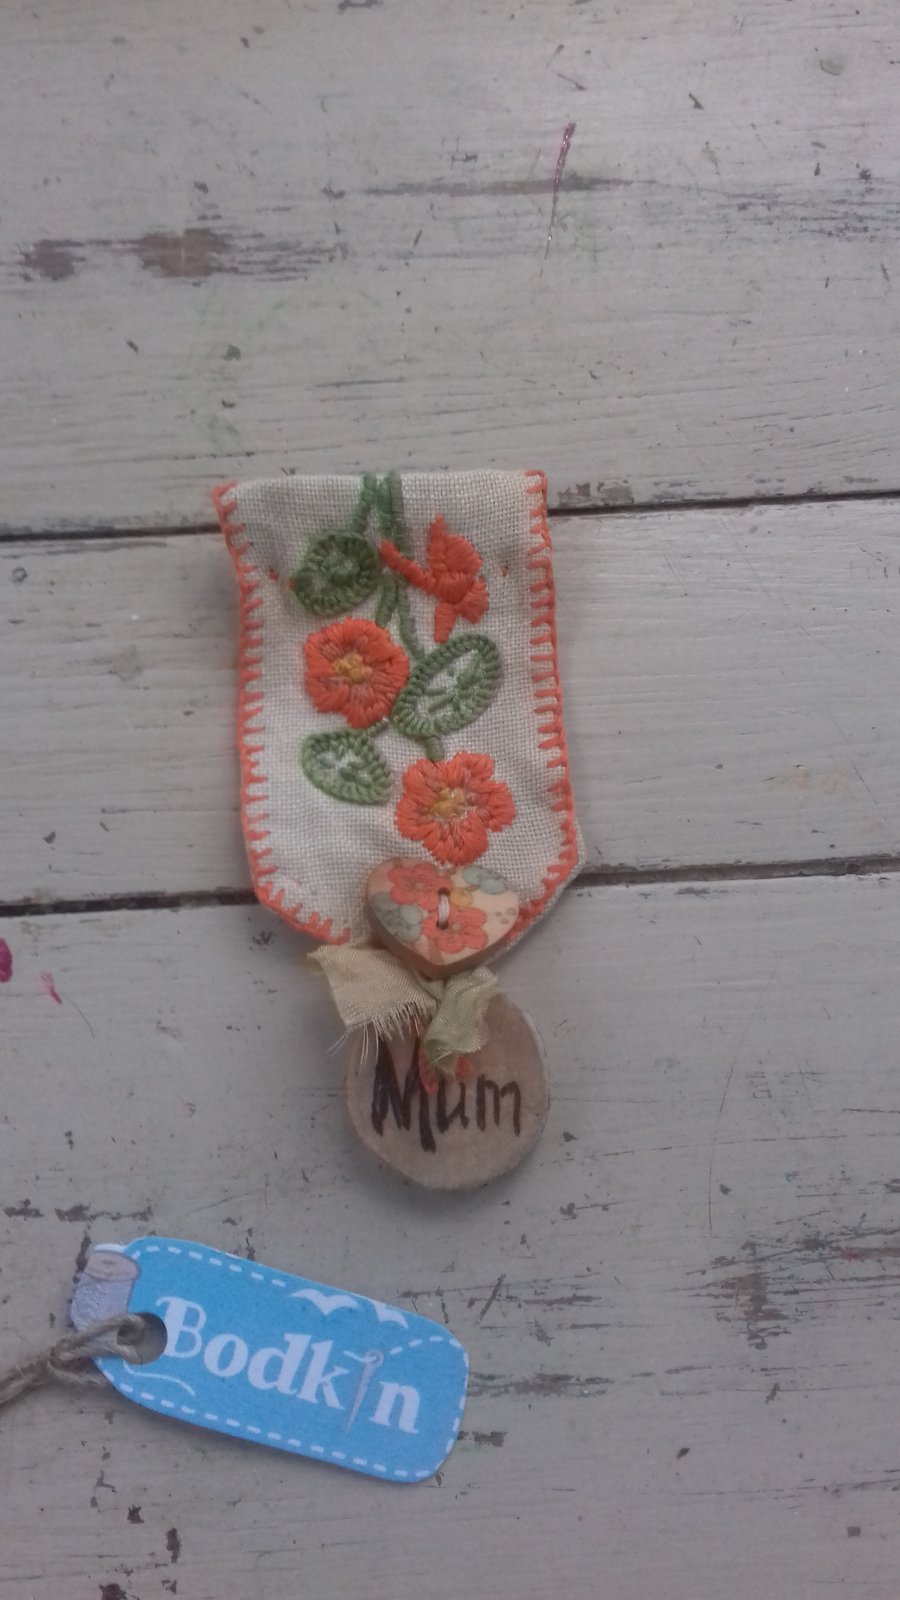 Small mum medal